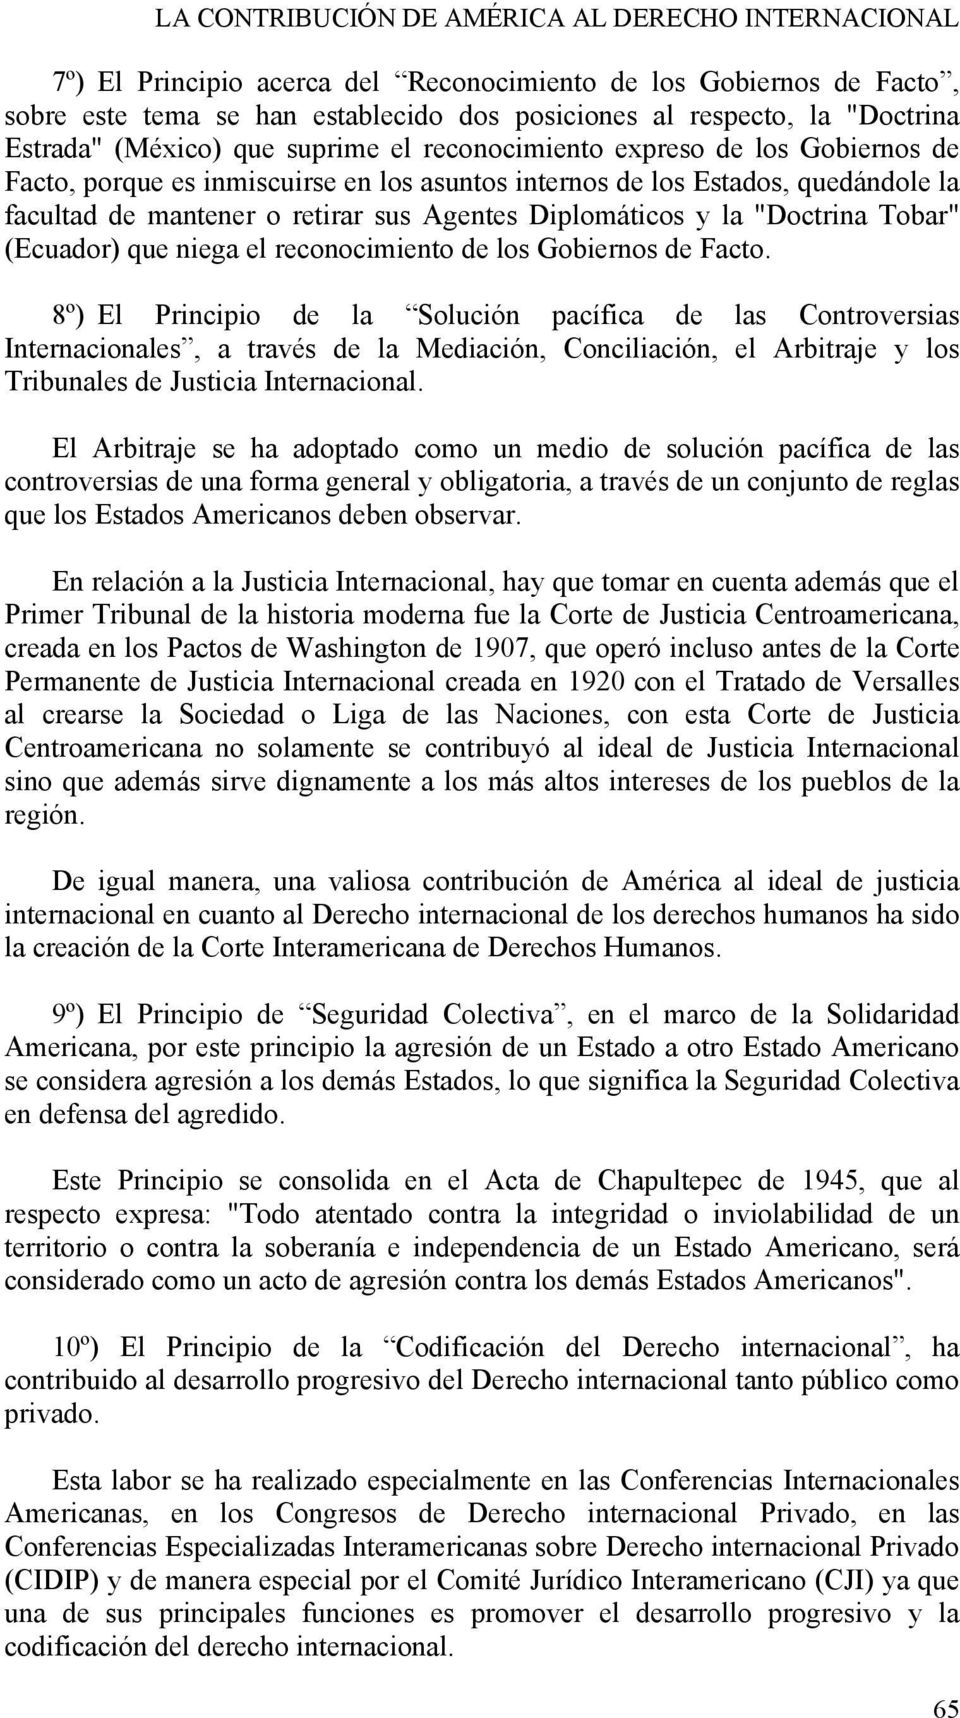 Agentes Diplomáticos y la "Doctrina Tobar" (Ecuador) que niega el reconocimiento de los Gobiernos de Facto.